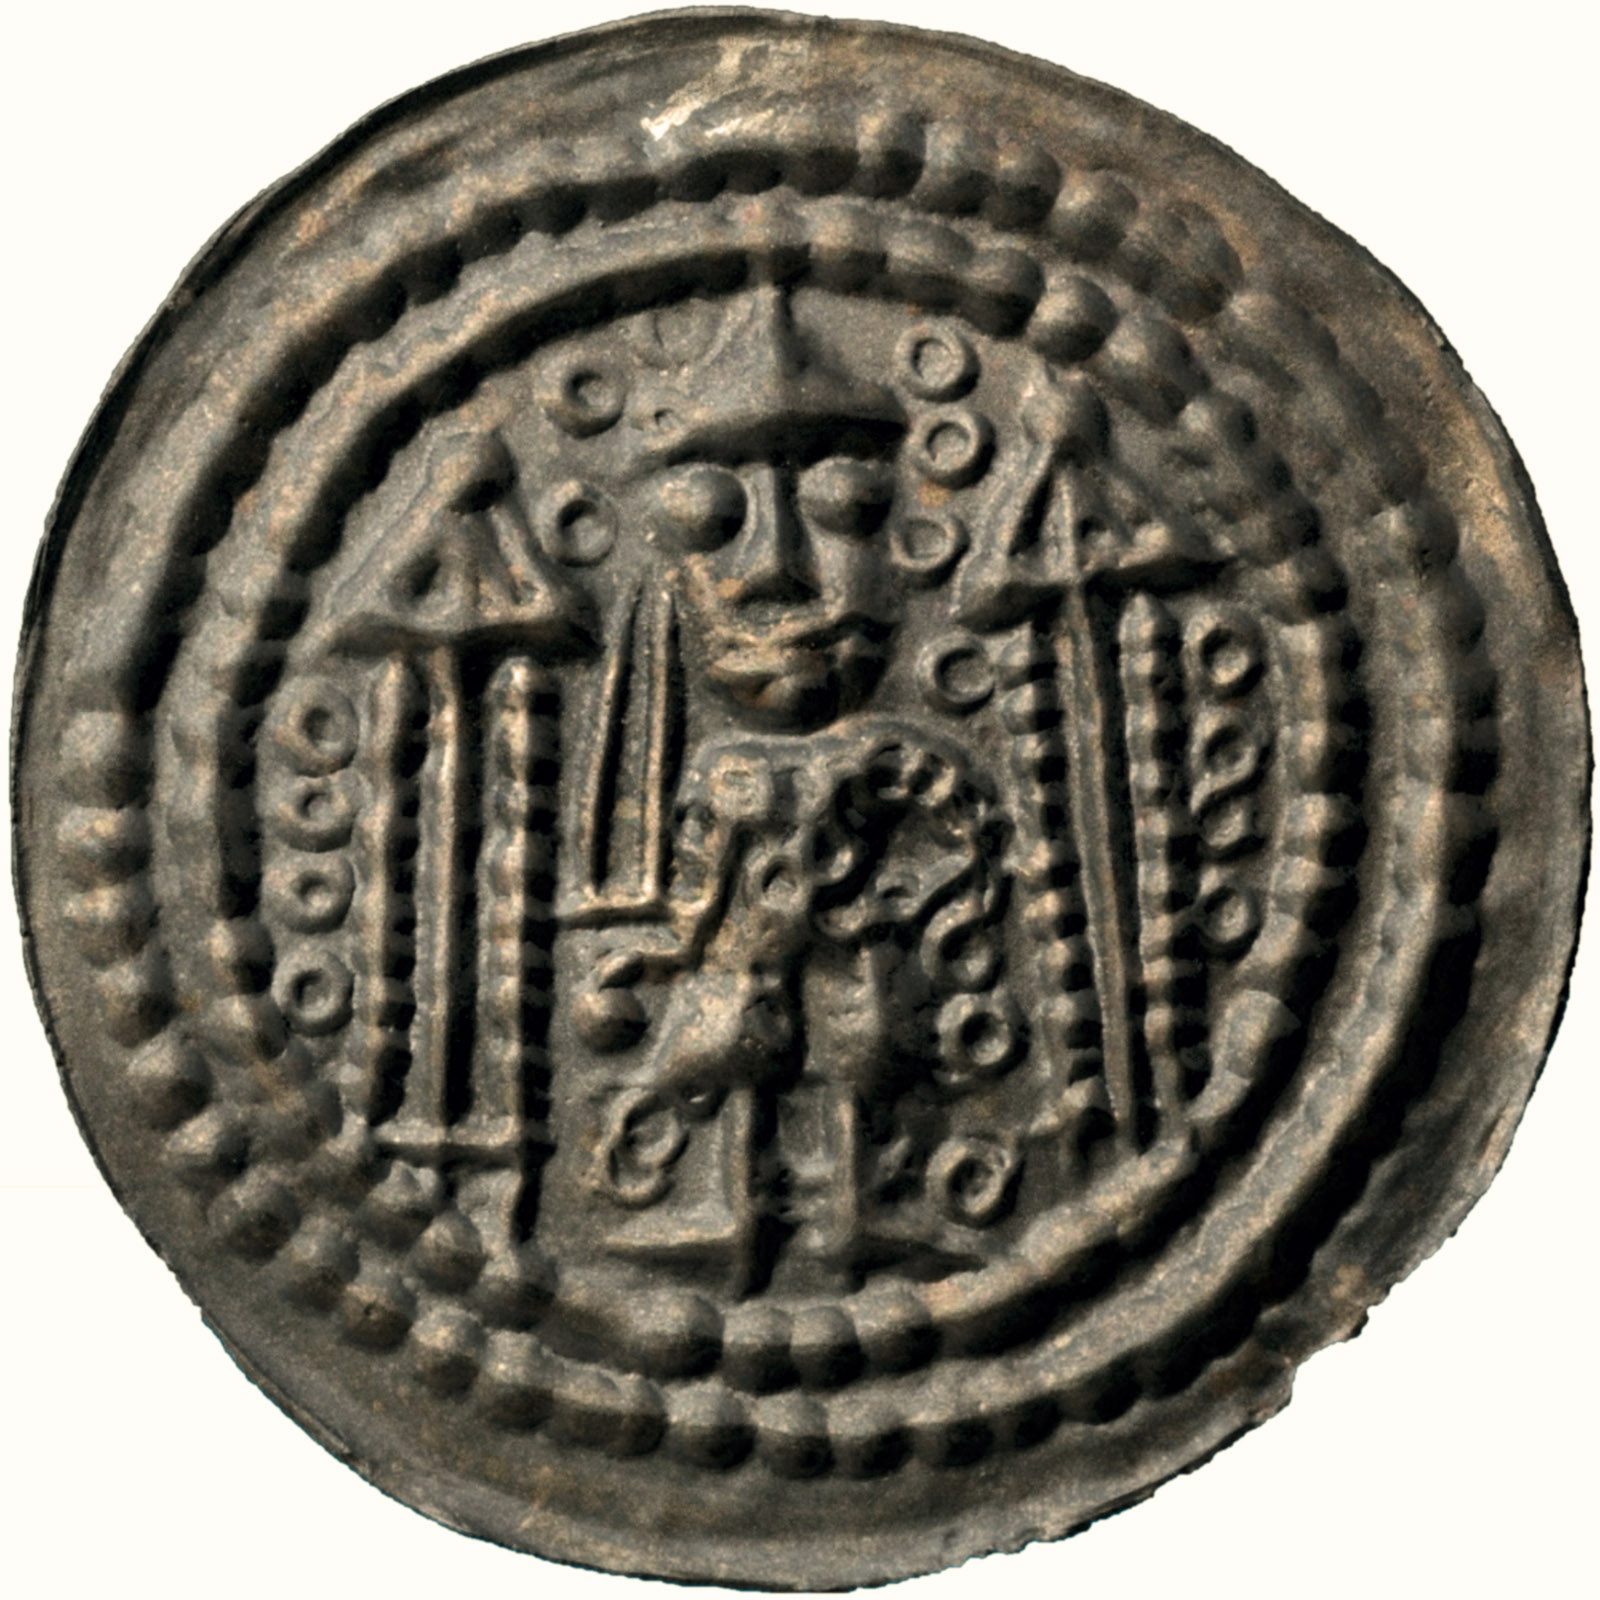 Münze des Münzherren Konrad Markgraf von Meißen, Prägedatum um 1150 – Kombininierte Darstellung der Grundfarbe und Oberfläche.